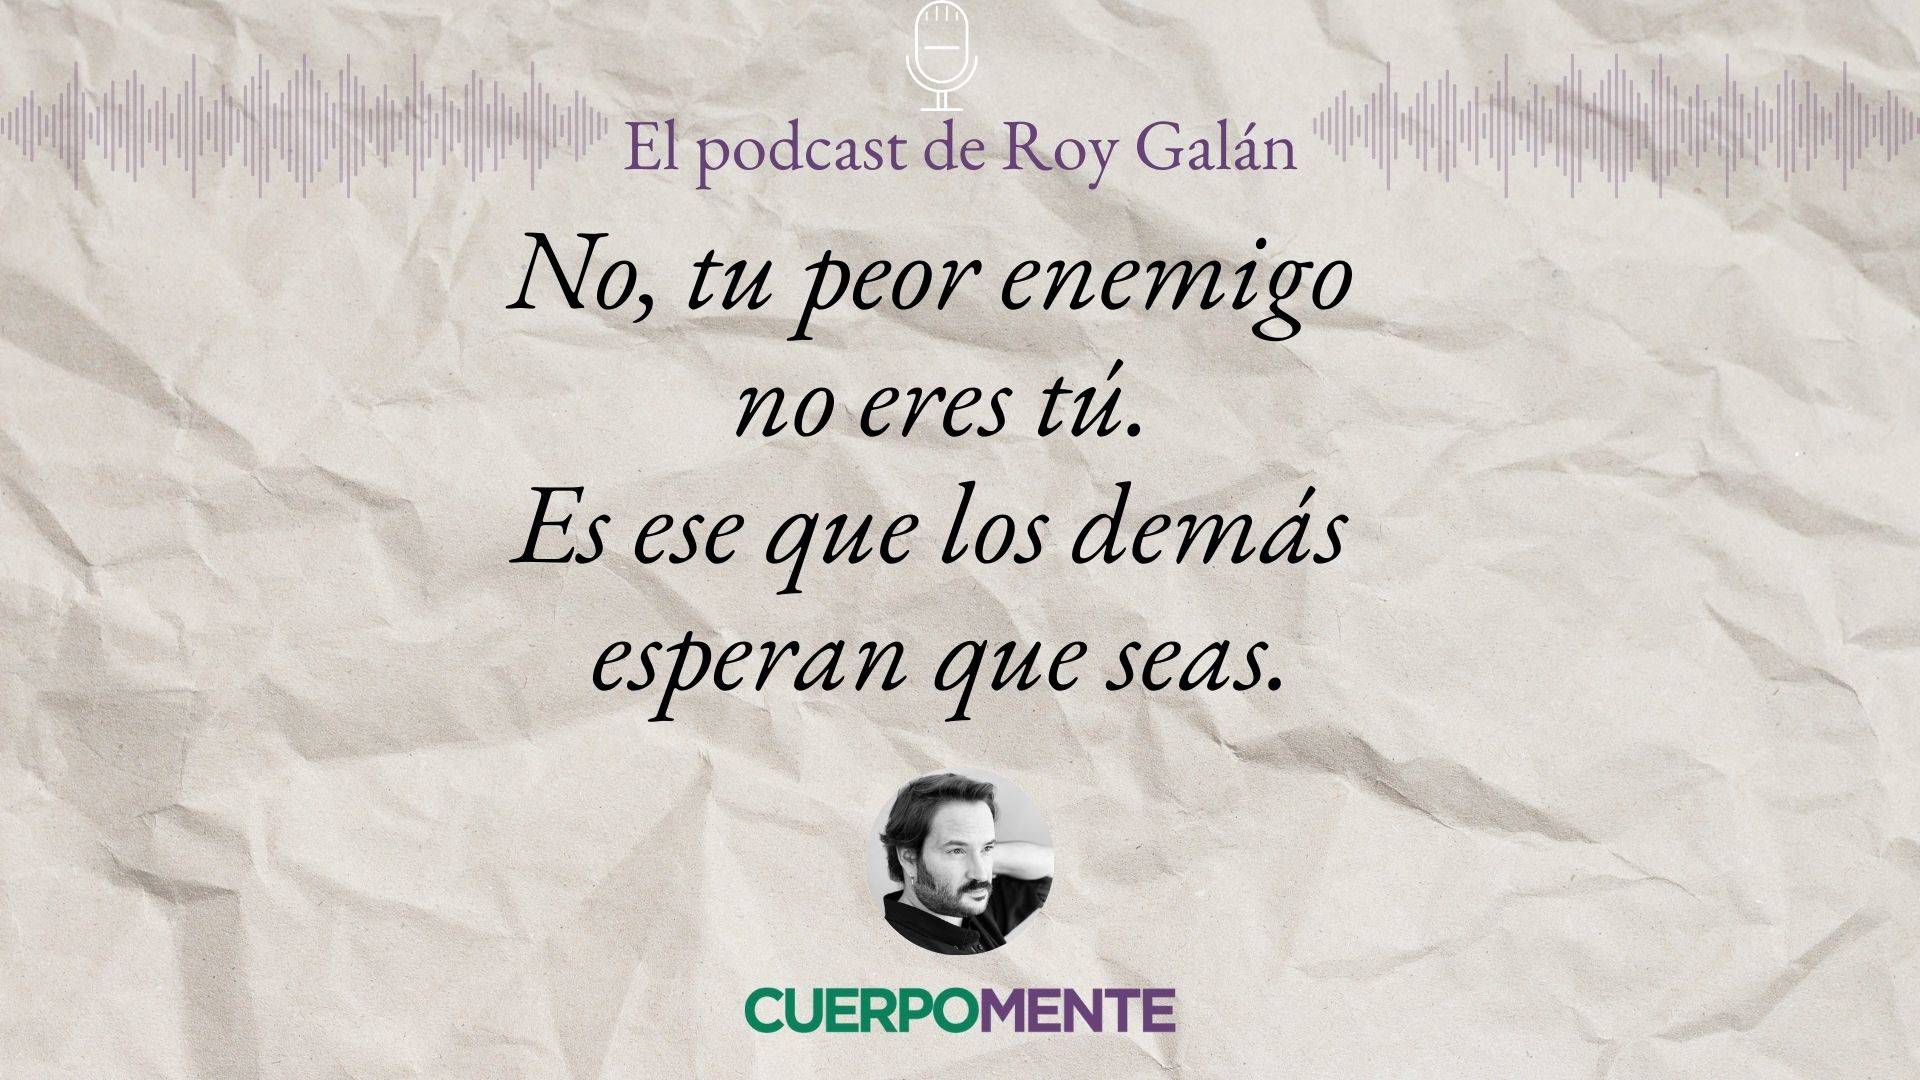 Frases de la vida para reflexionar pronunciadas por Roy Galán (podcast)